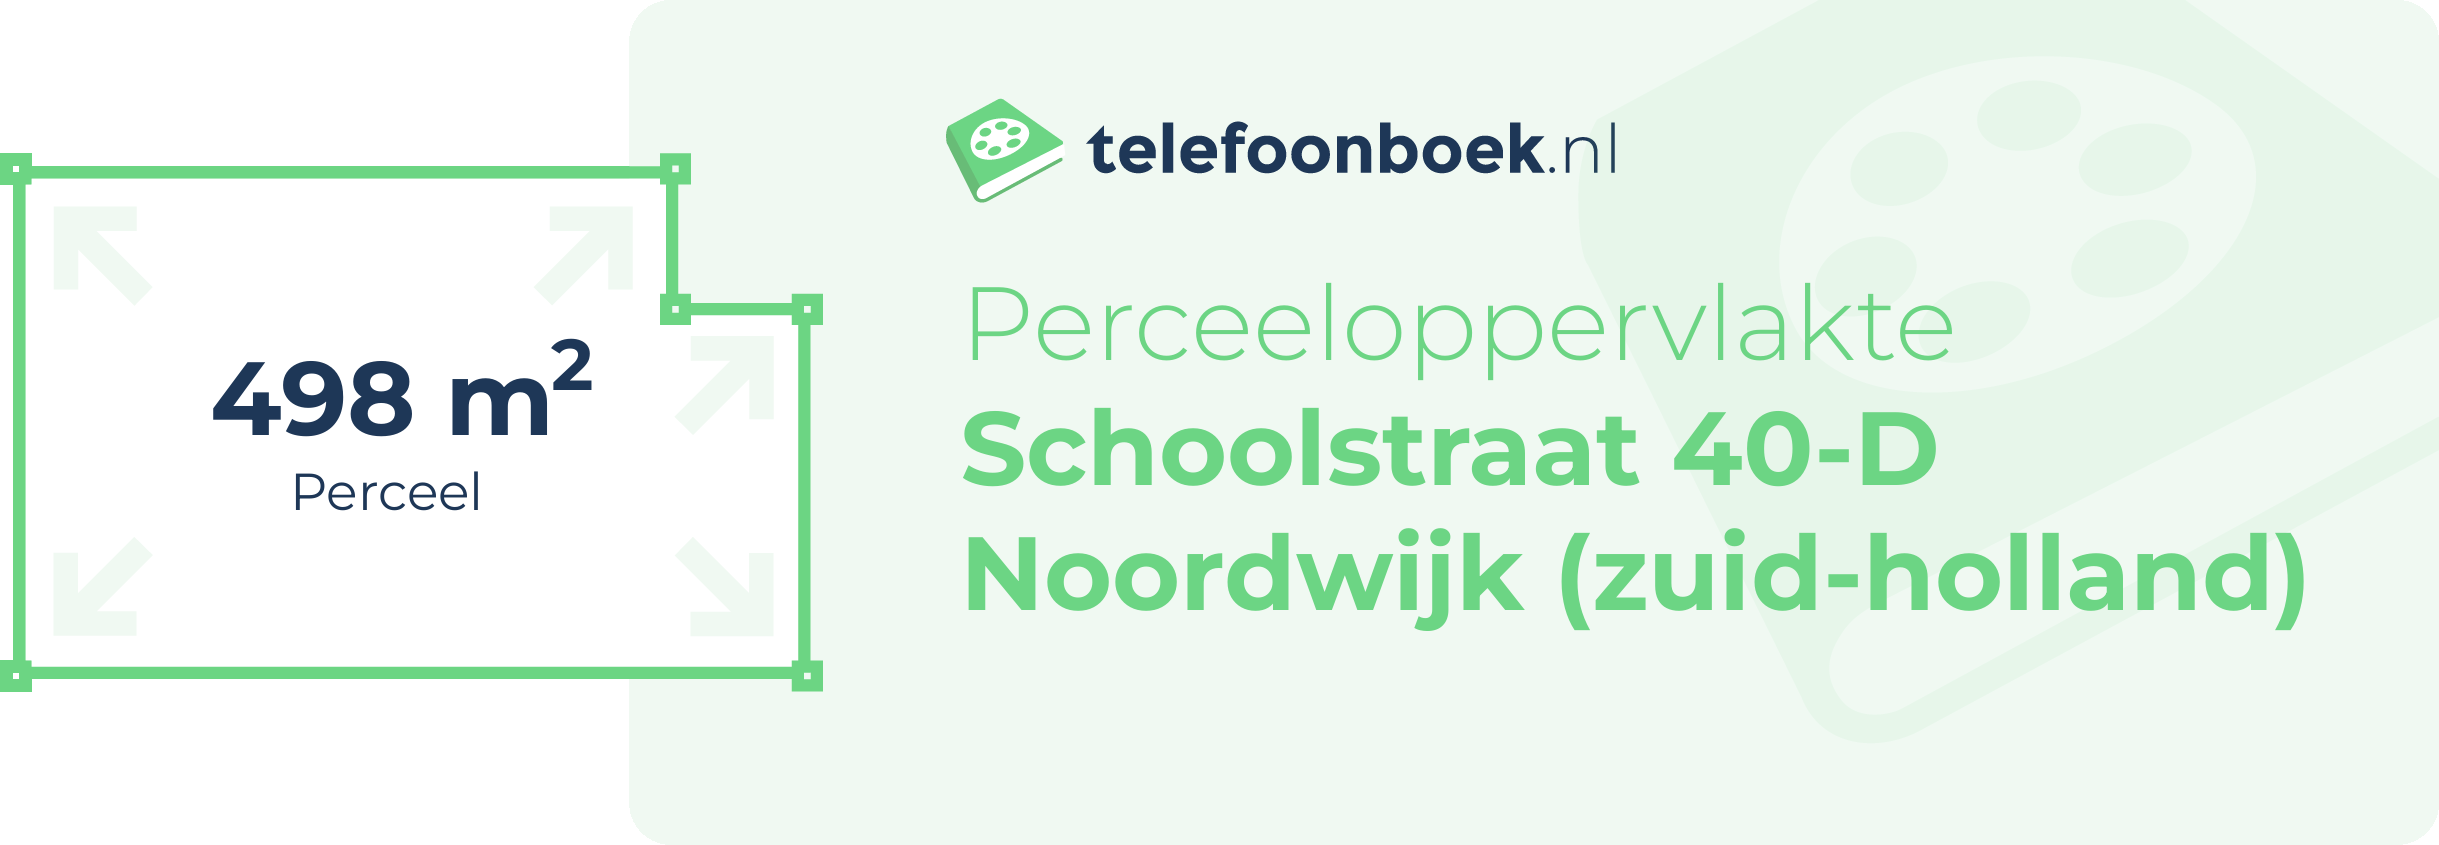 Perceeloppervlakte Schoolstraat 40-D Noordwijk (Zuid-Holland)